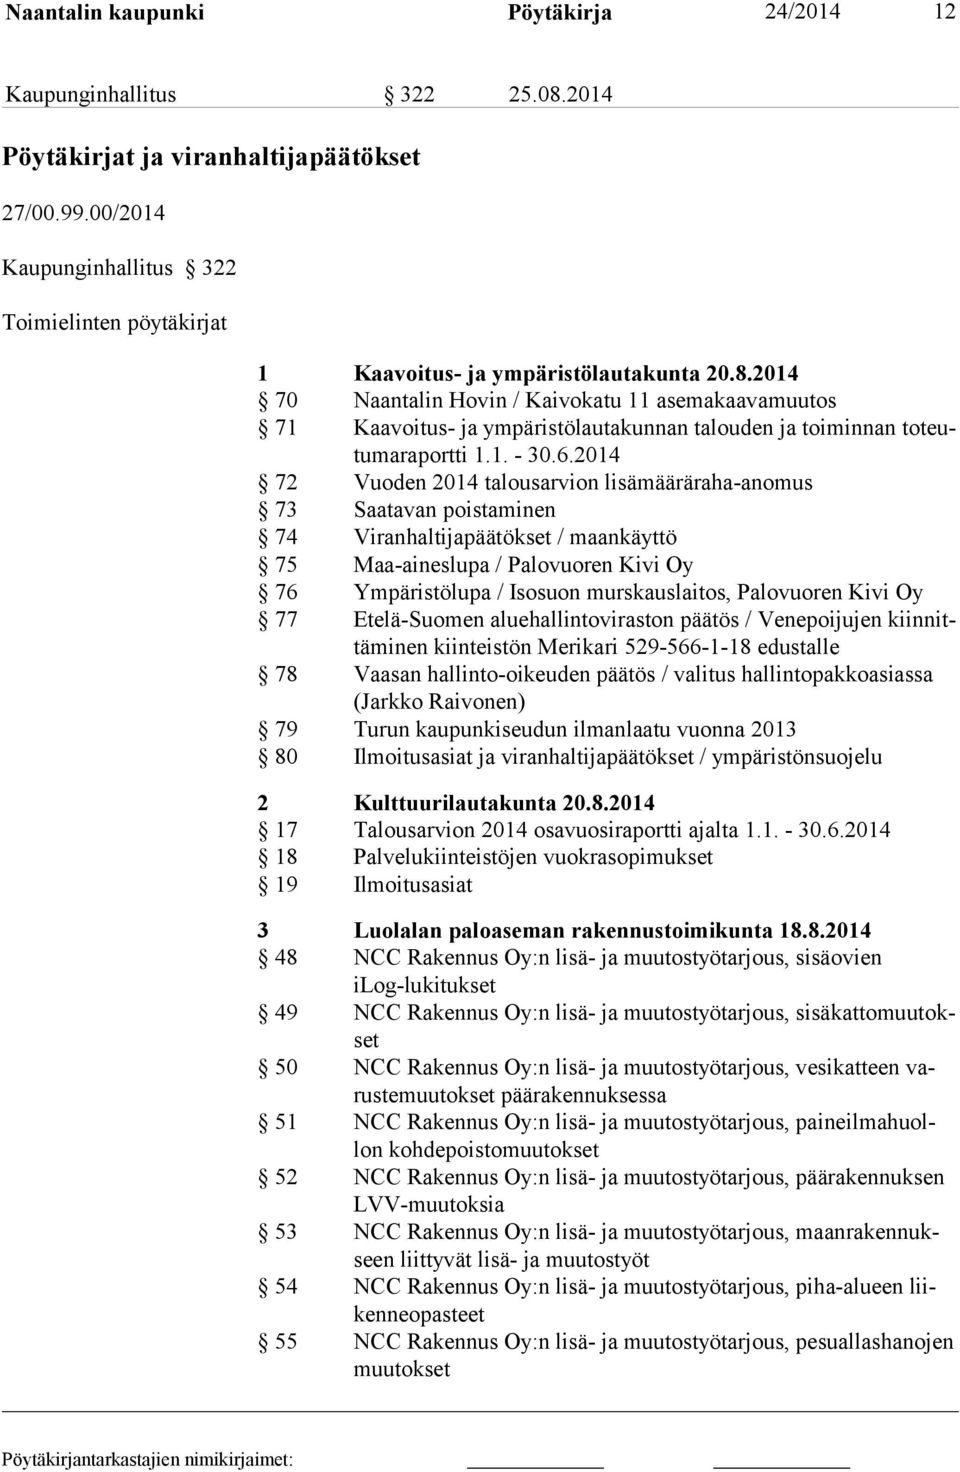 2014 70 Naantalin Hovin / Kaivokatu 11 asemakaavamuutos 71 Kaavoitus- ja ympäristölautakunnan talouden ja toiminnan toteutumaraportti 1.1. - 30.6.